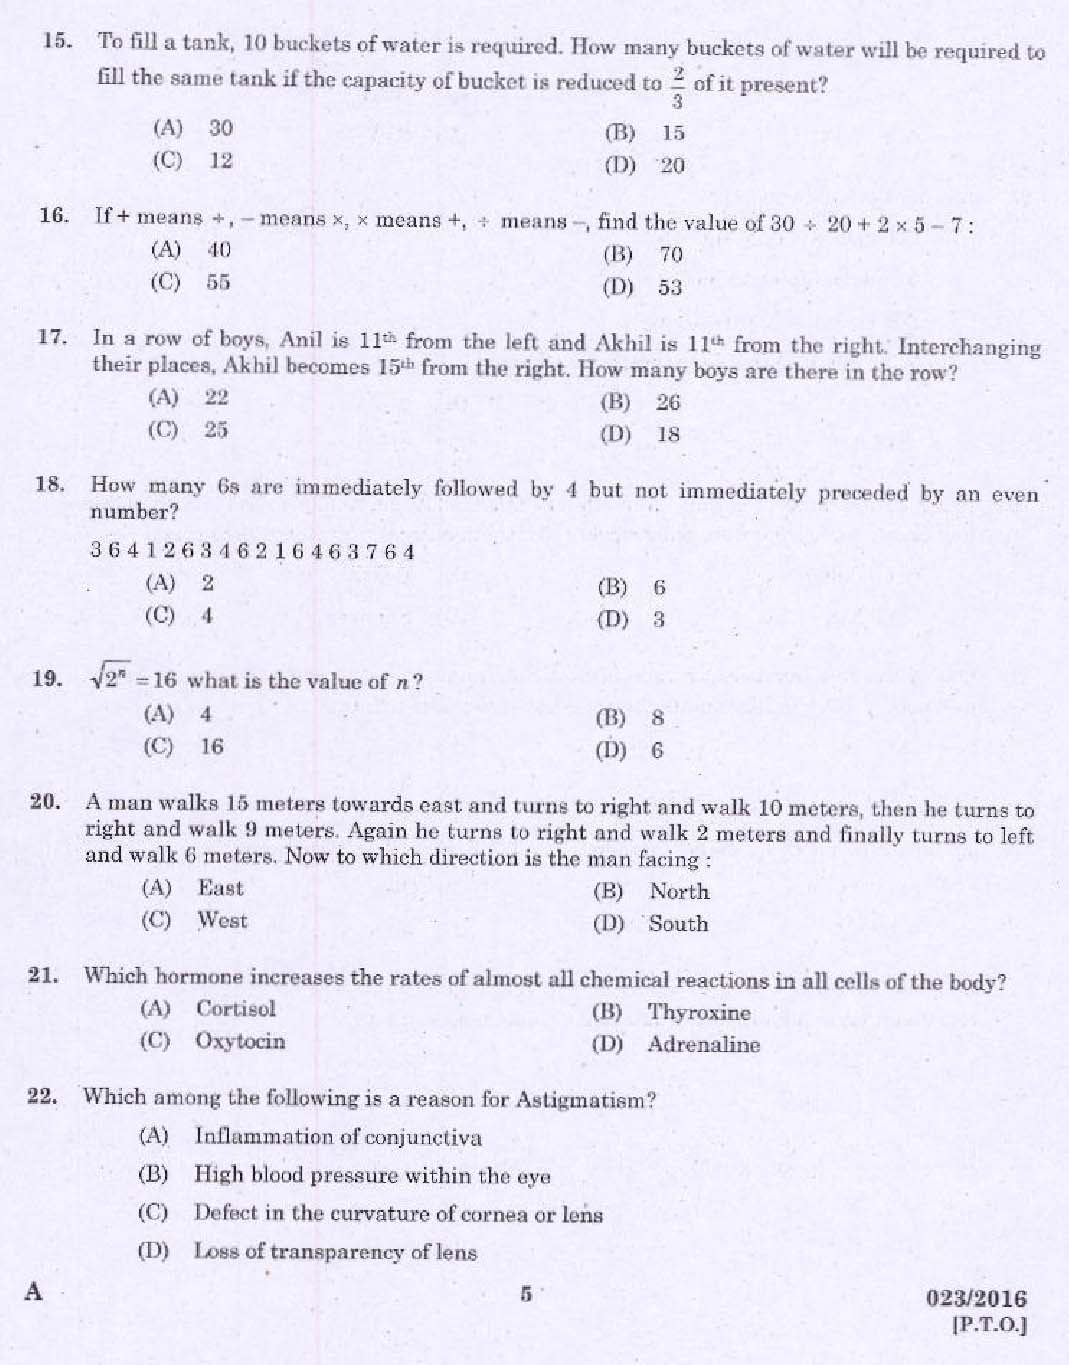 Kerala PSC Administrative Assistant Exam Question 0232016 3